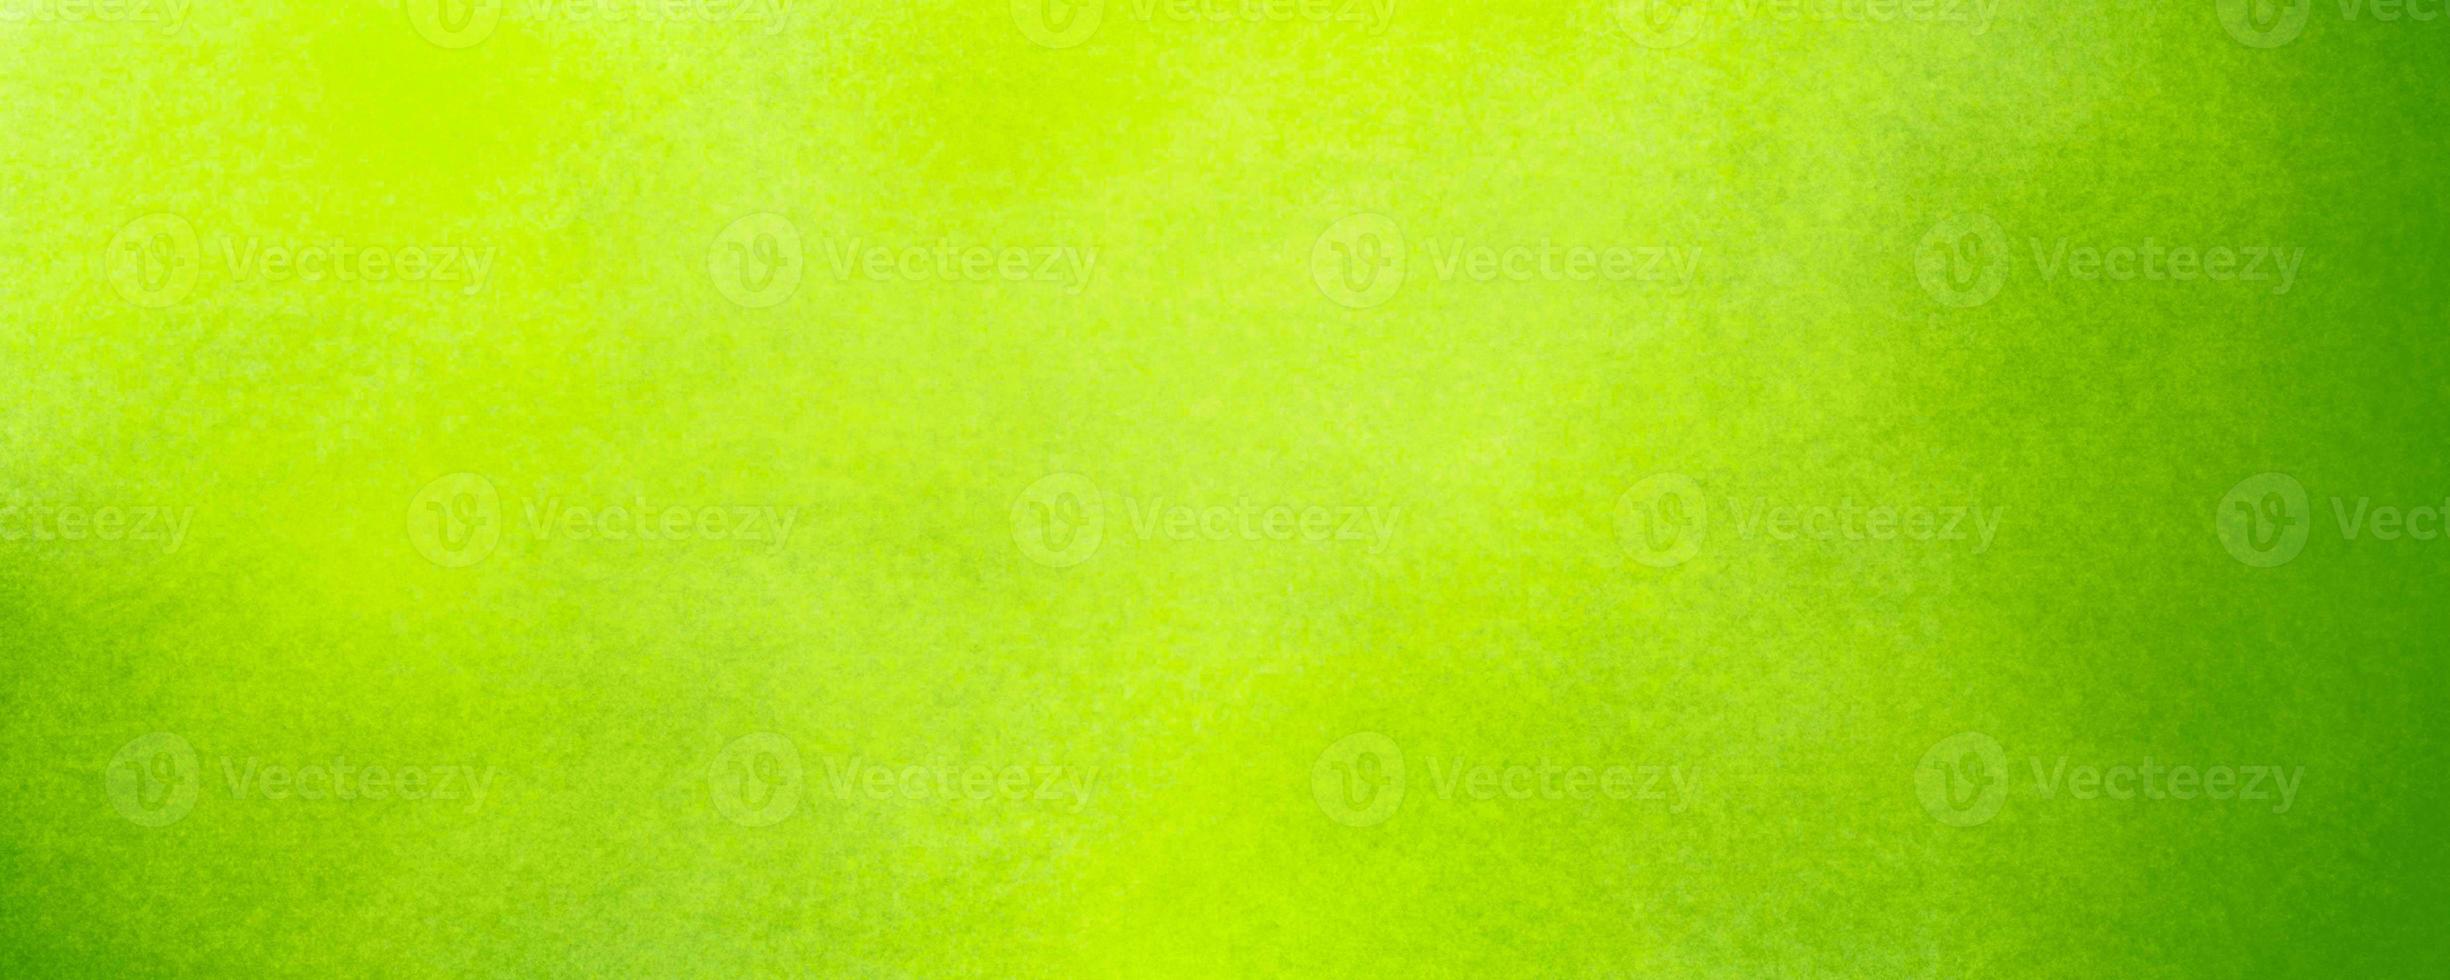 textura de fundo verde abstrato foto